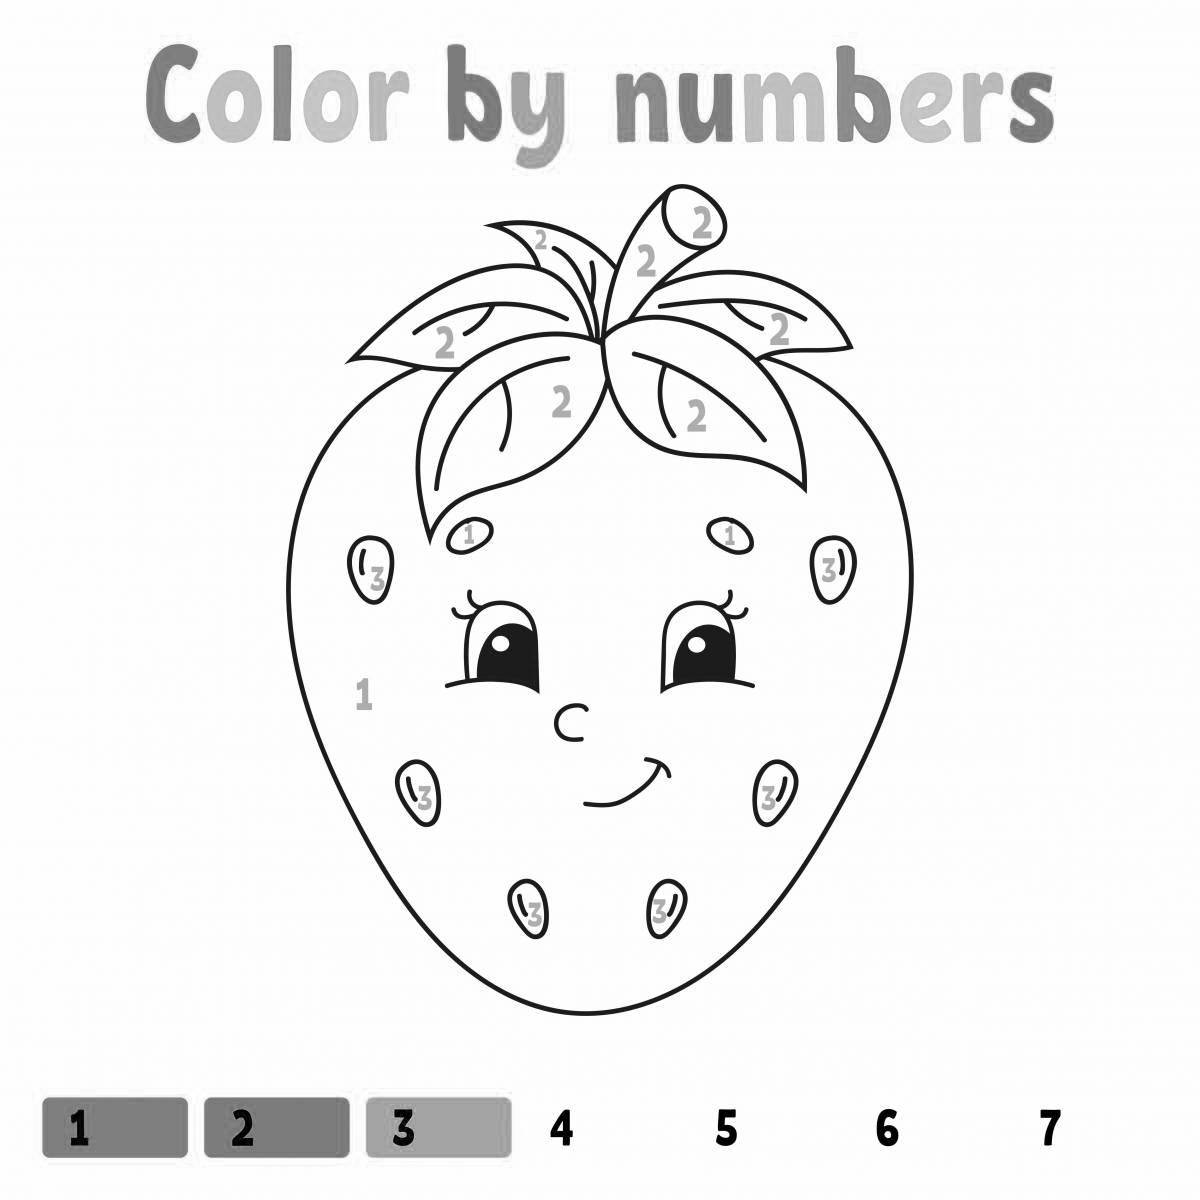 Веселая раскраска клубника с цифрами